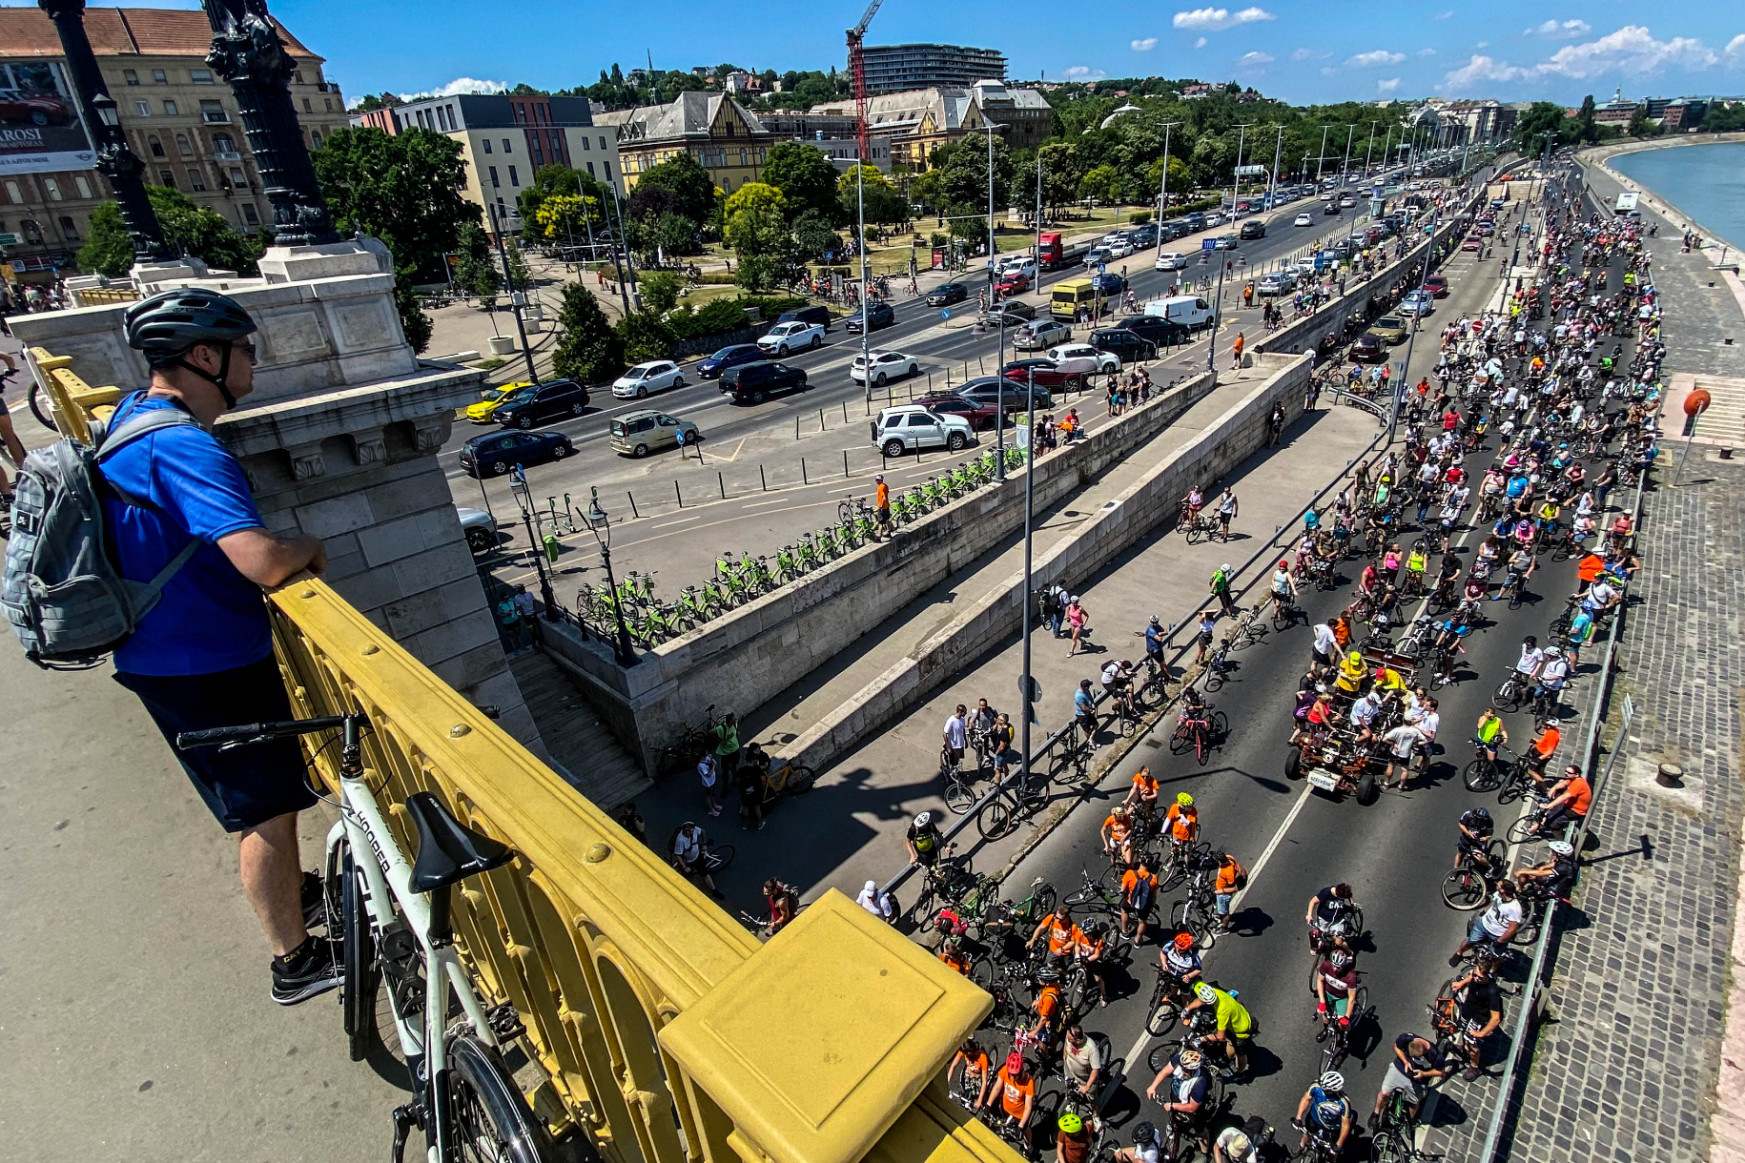 Tizenötezer bringás tekert keresztül Budapesten